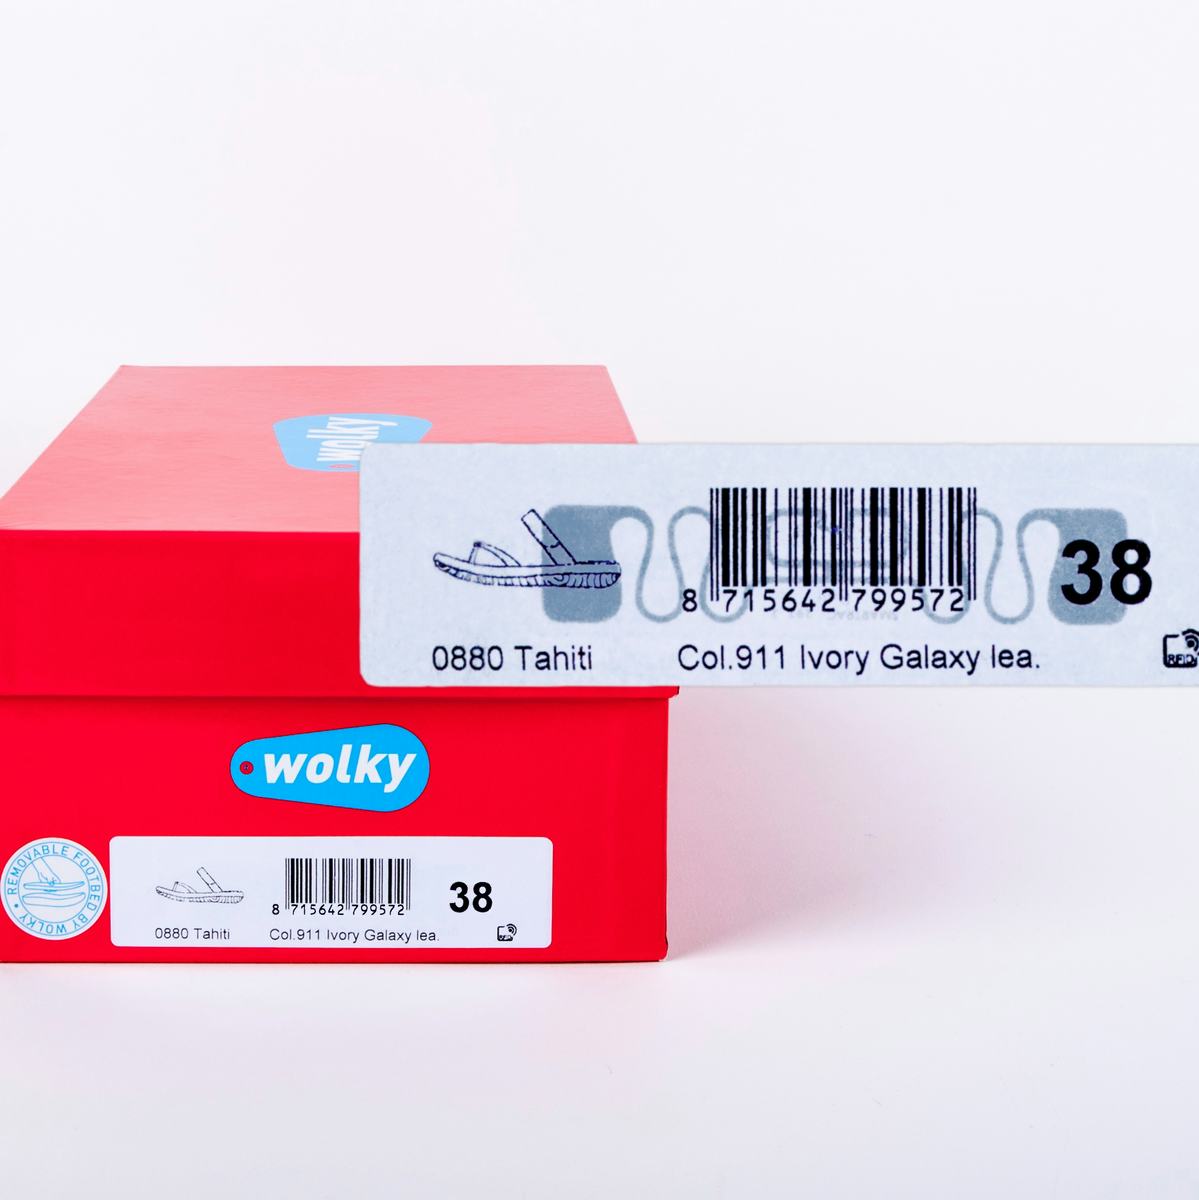 Wolky voorziet schoenendozen van RFID-label